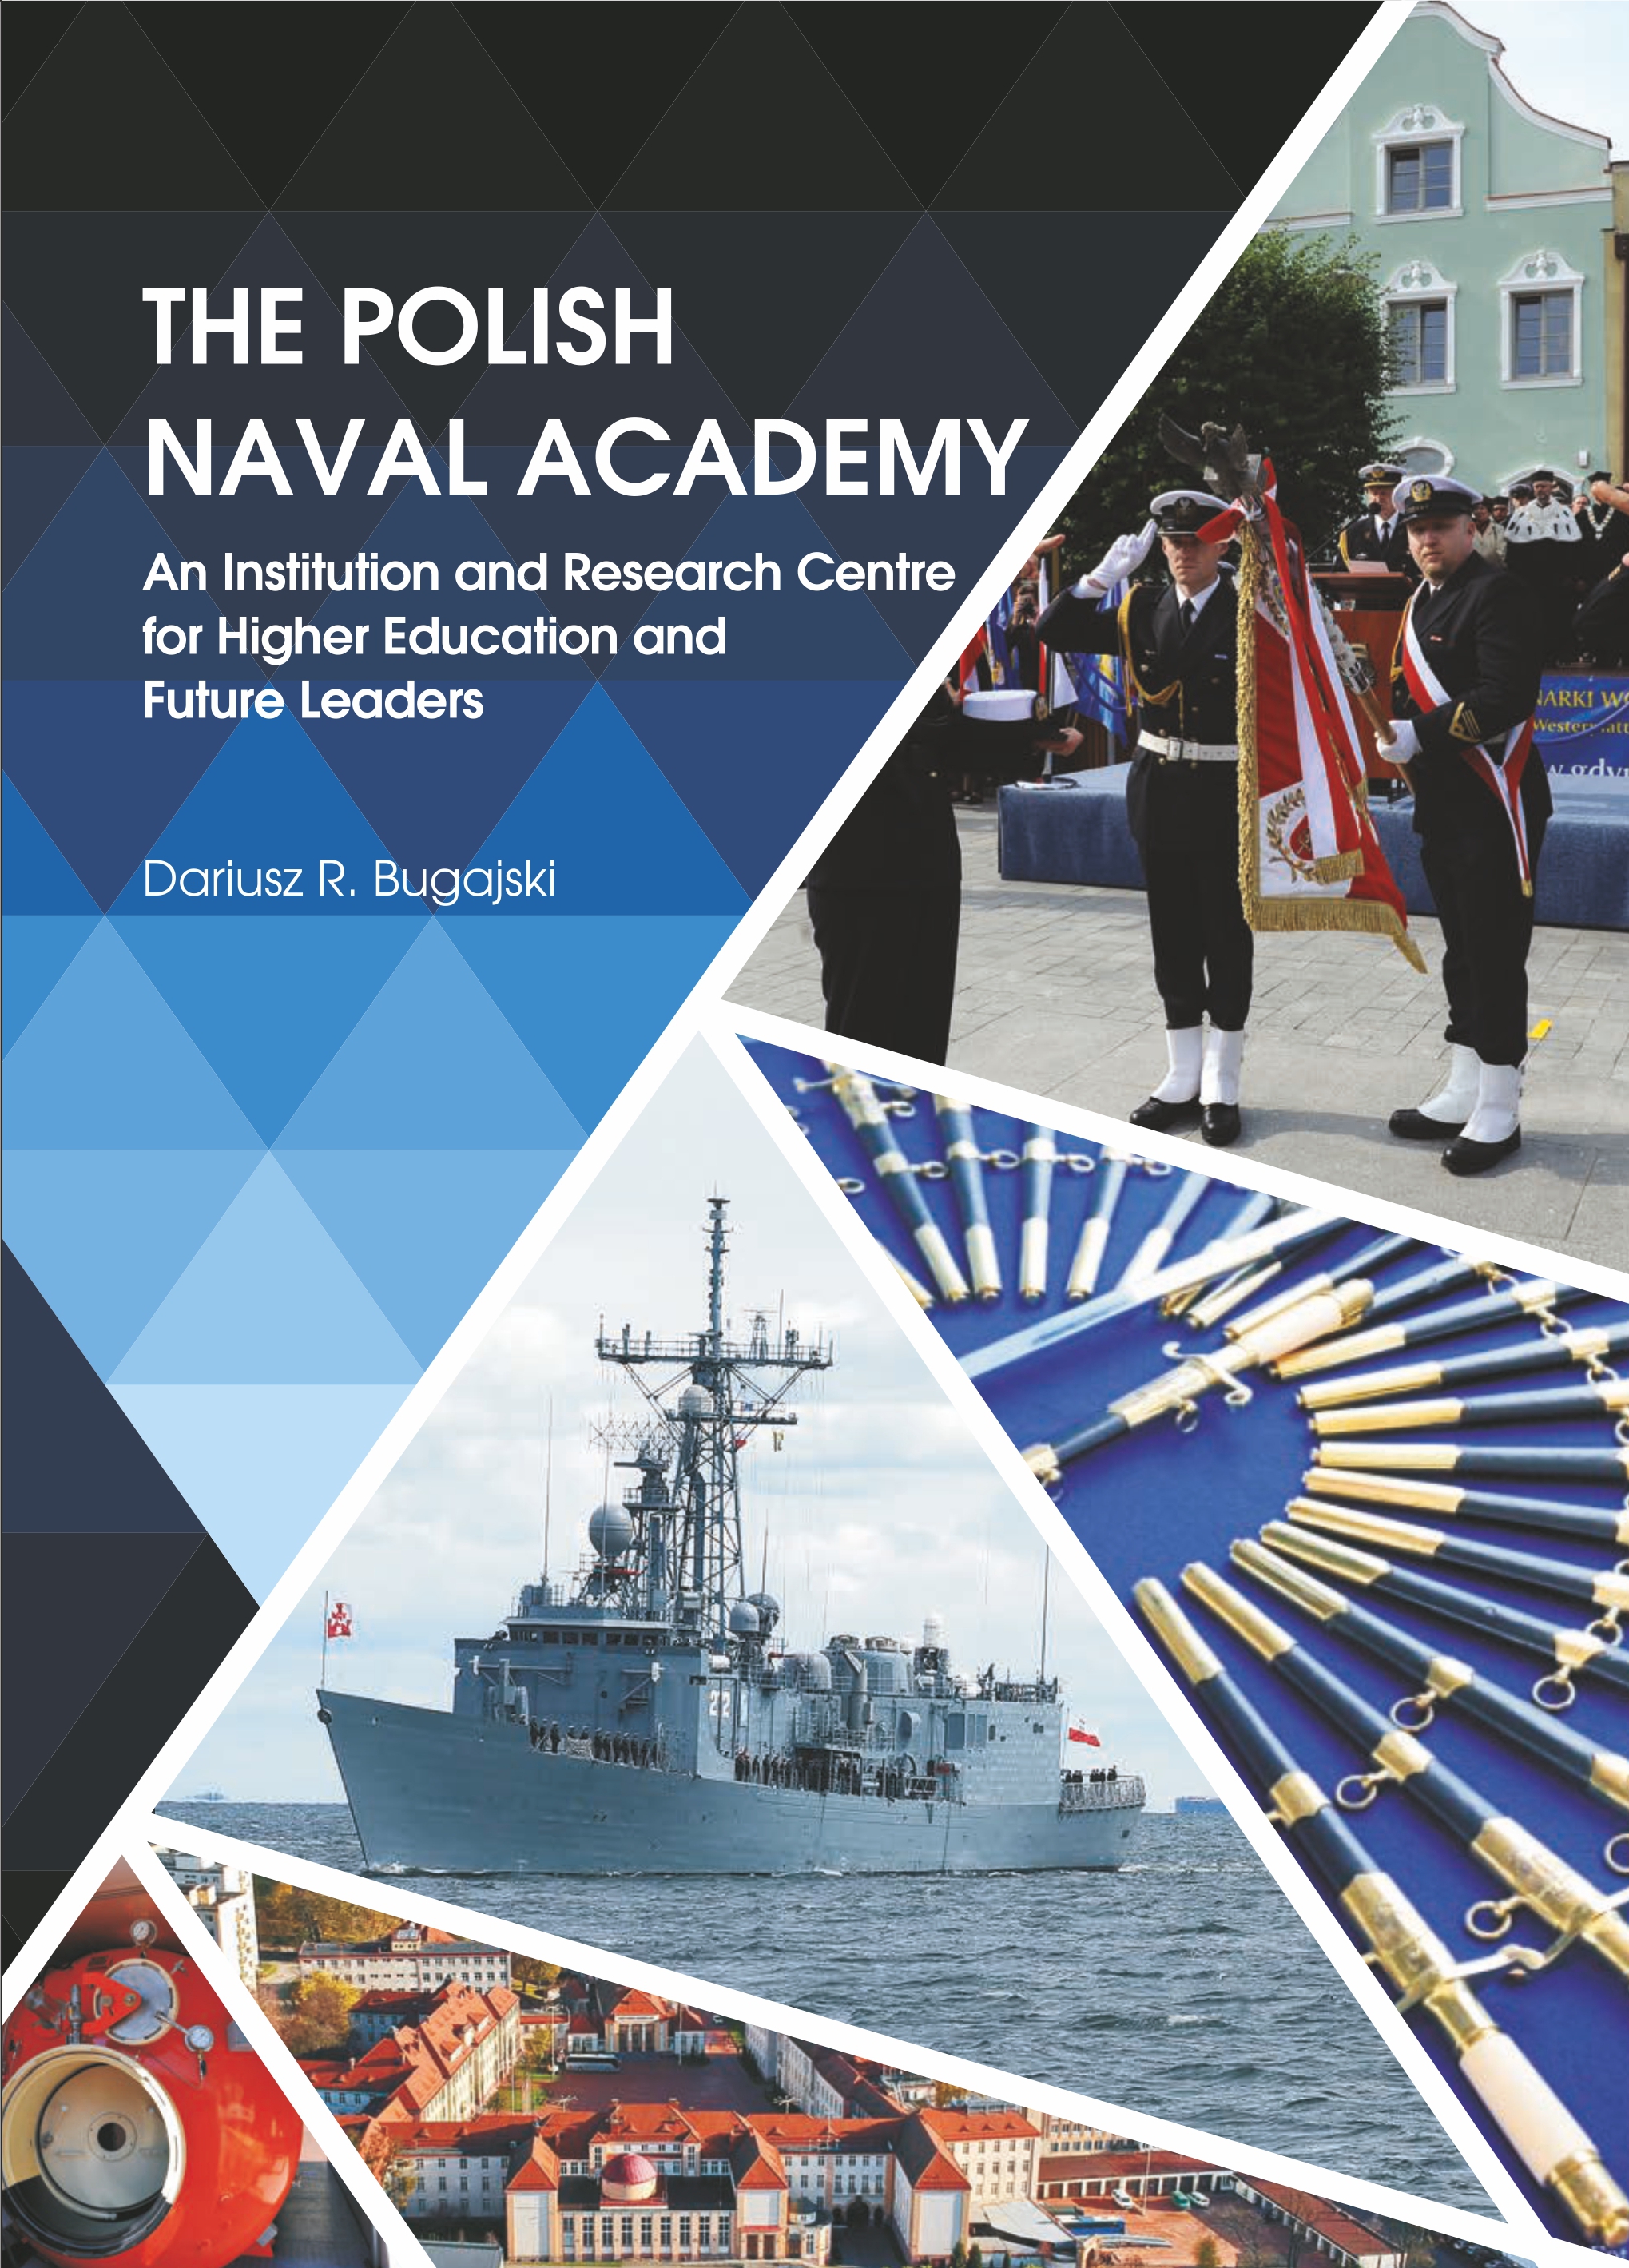 The Polish Naval Academy